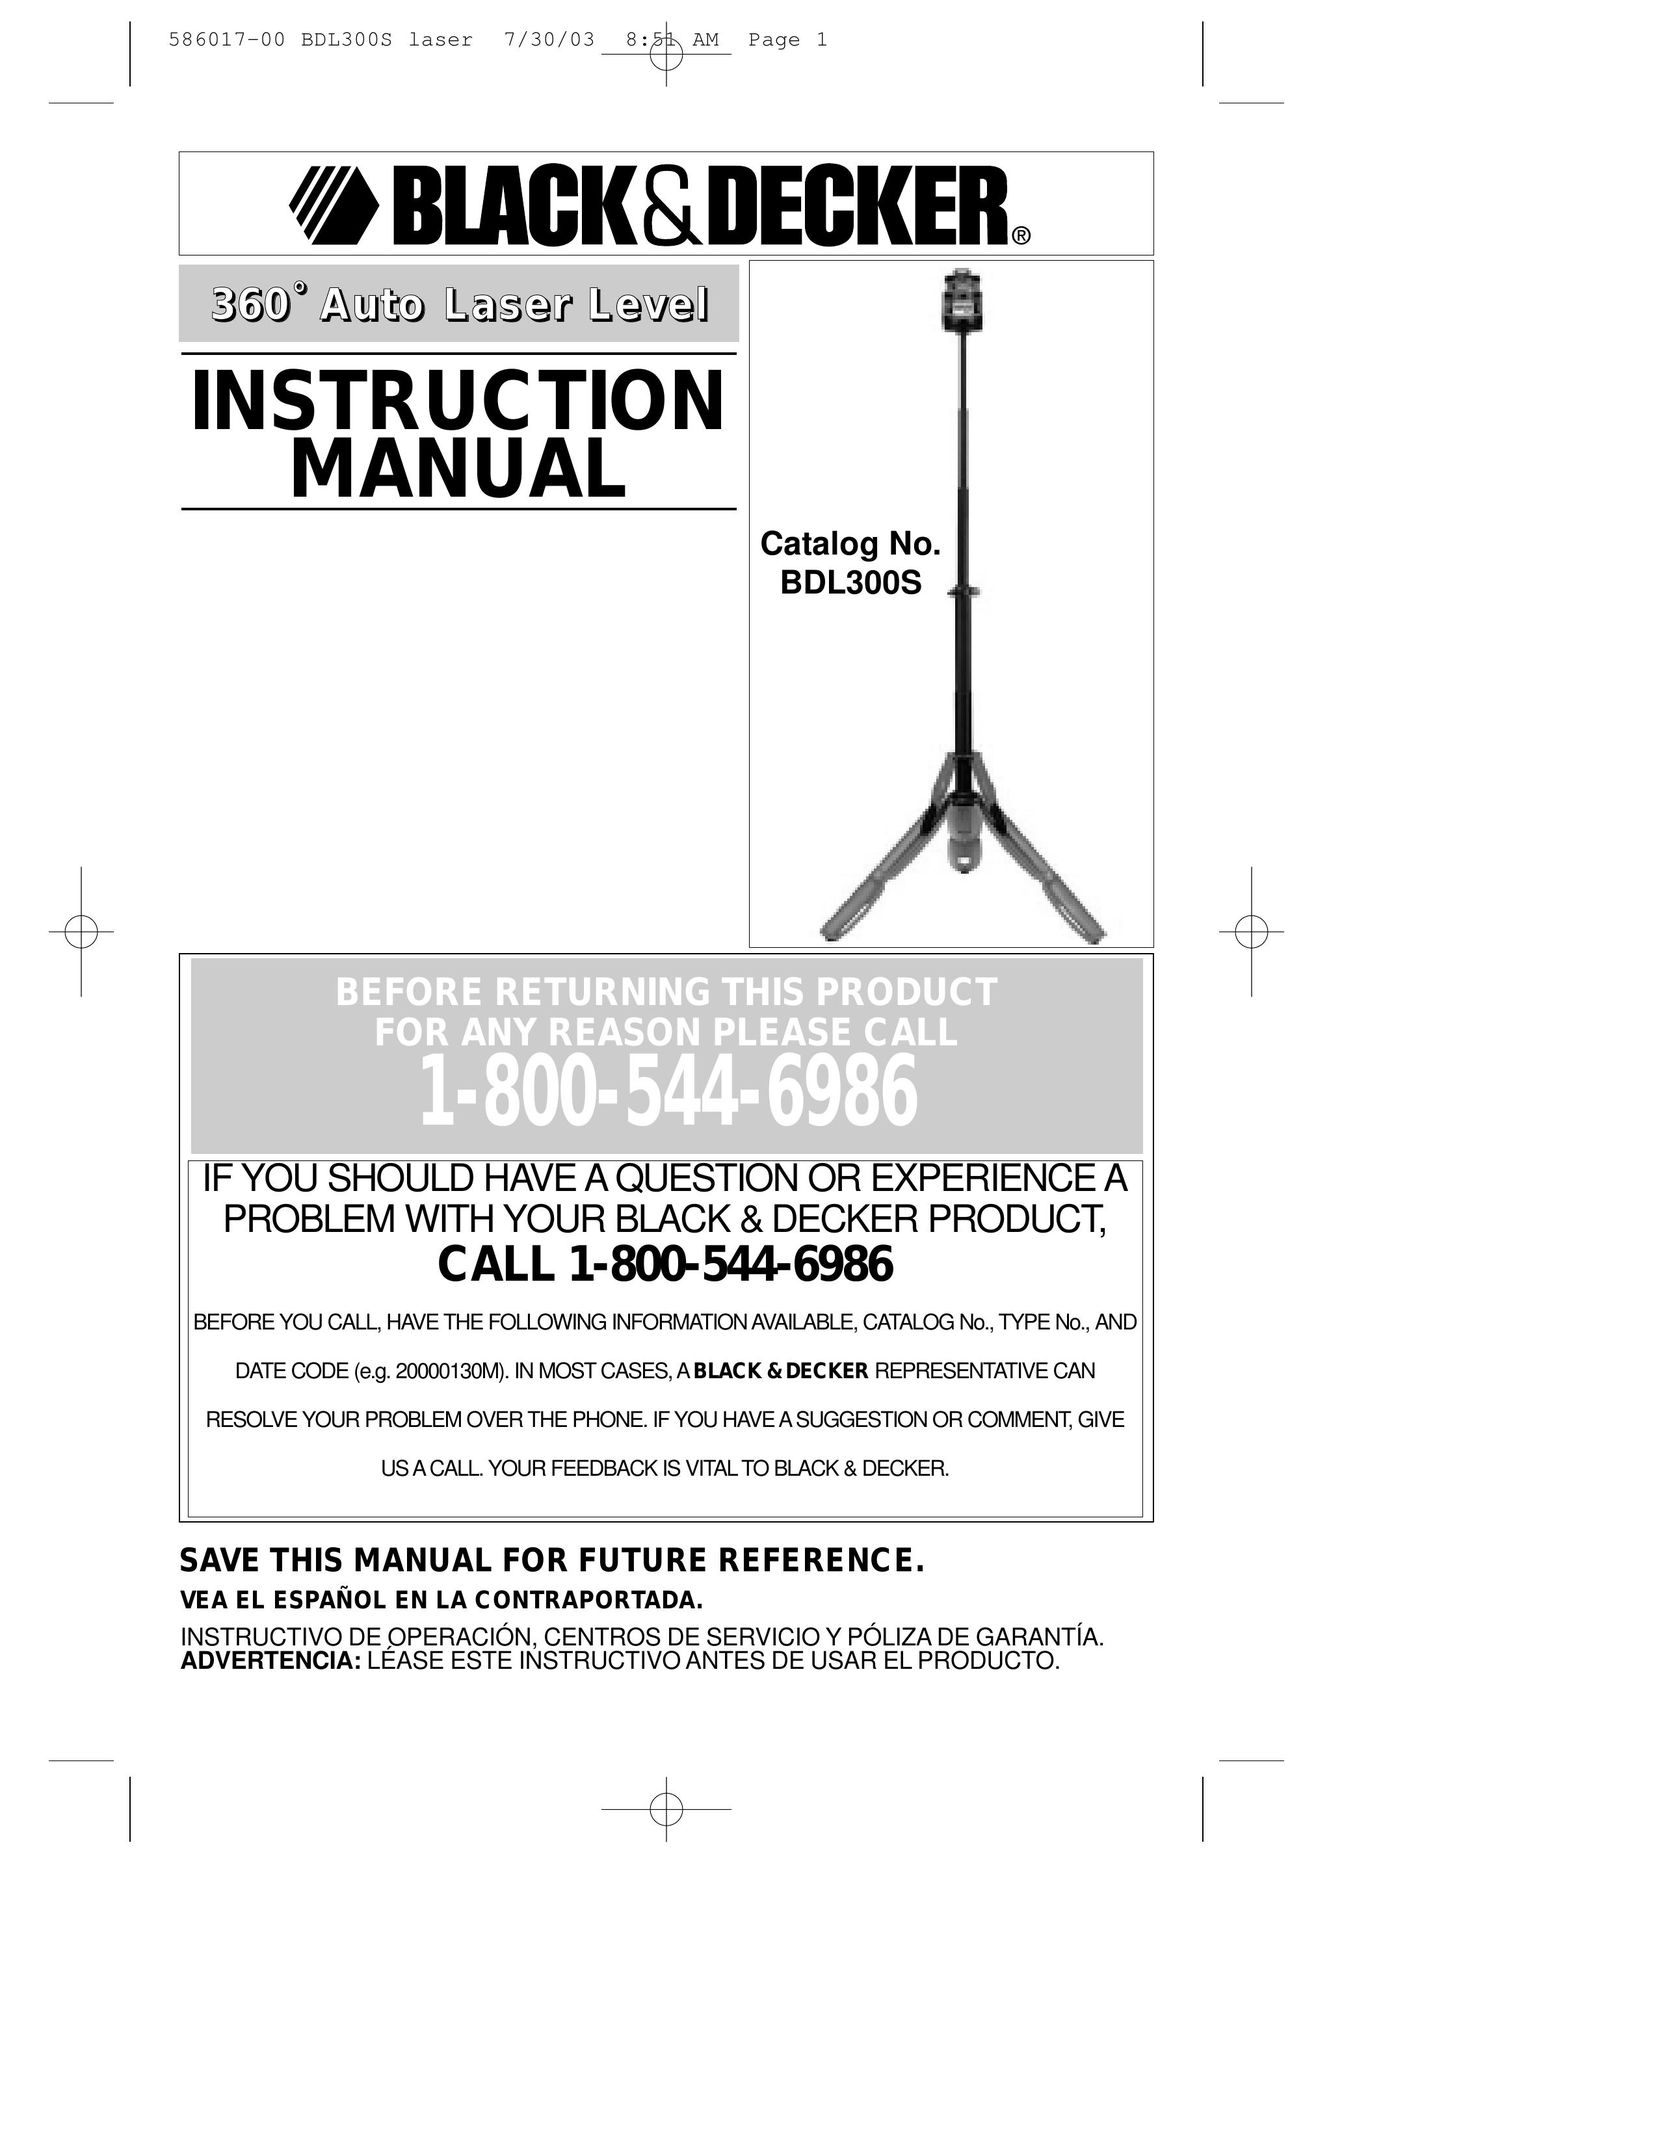 Black & Decker BDL300S Laser Level User Manual